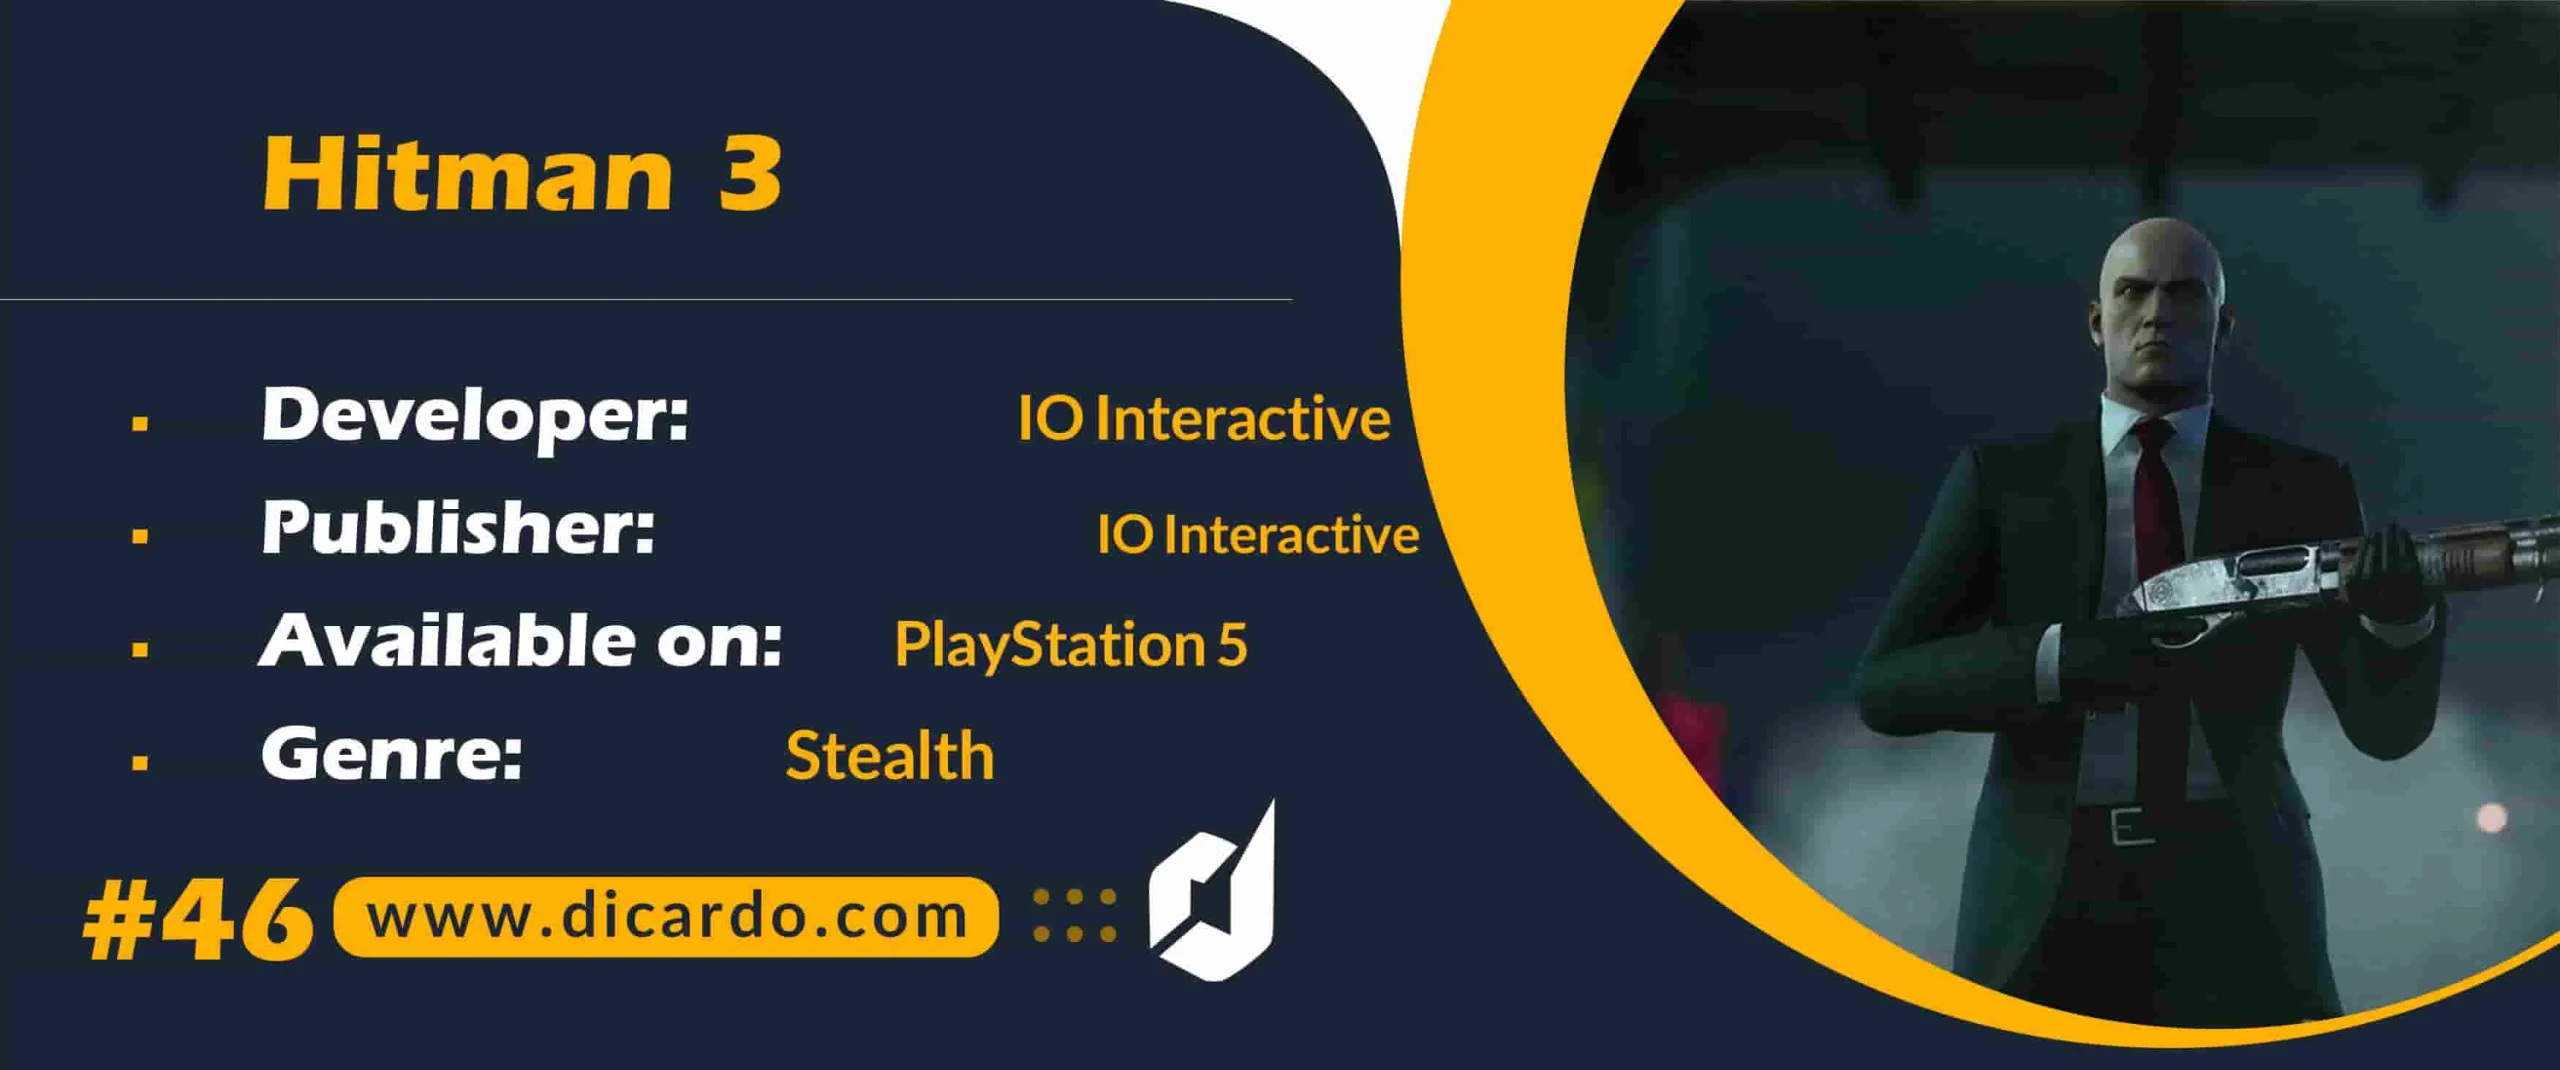 #46 هیتمن 3 Hitman 3 از بهترین بازیهای PS5 با ژانر مخفی کاری